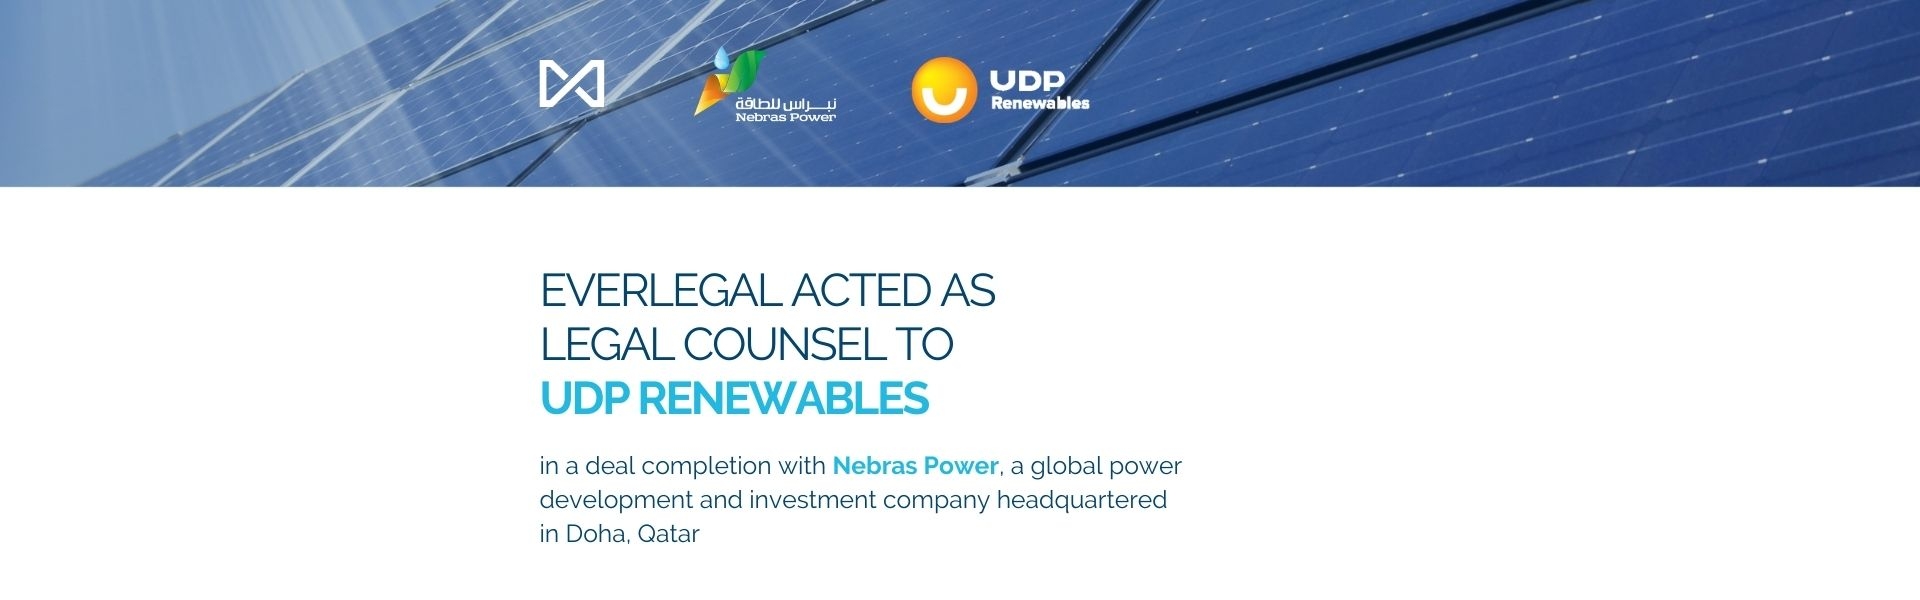 EVERLEGAL виступила юридичним партнером UDPRenewables в закритті угоди з Nebras Power